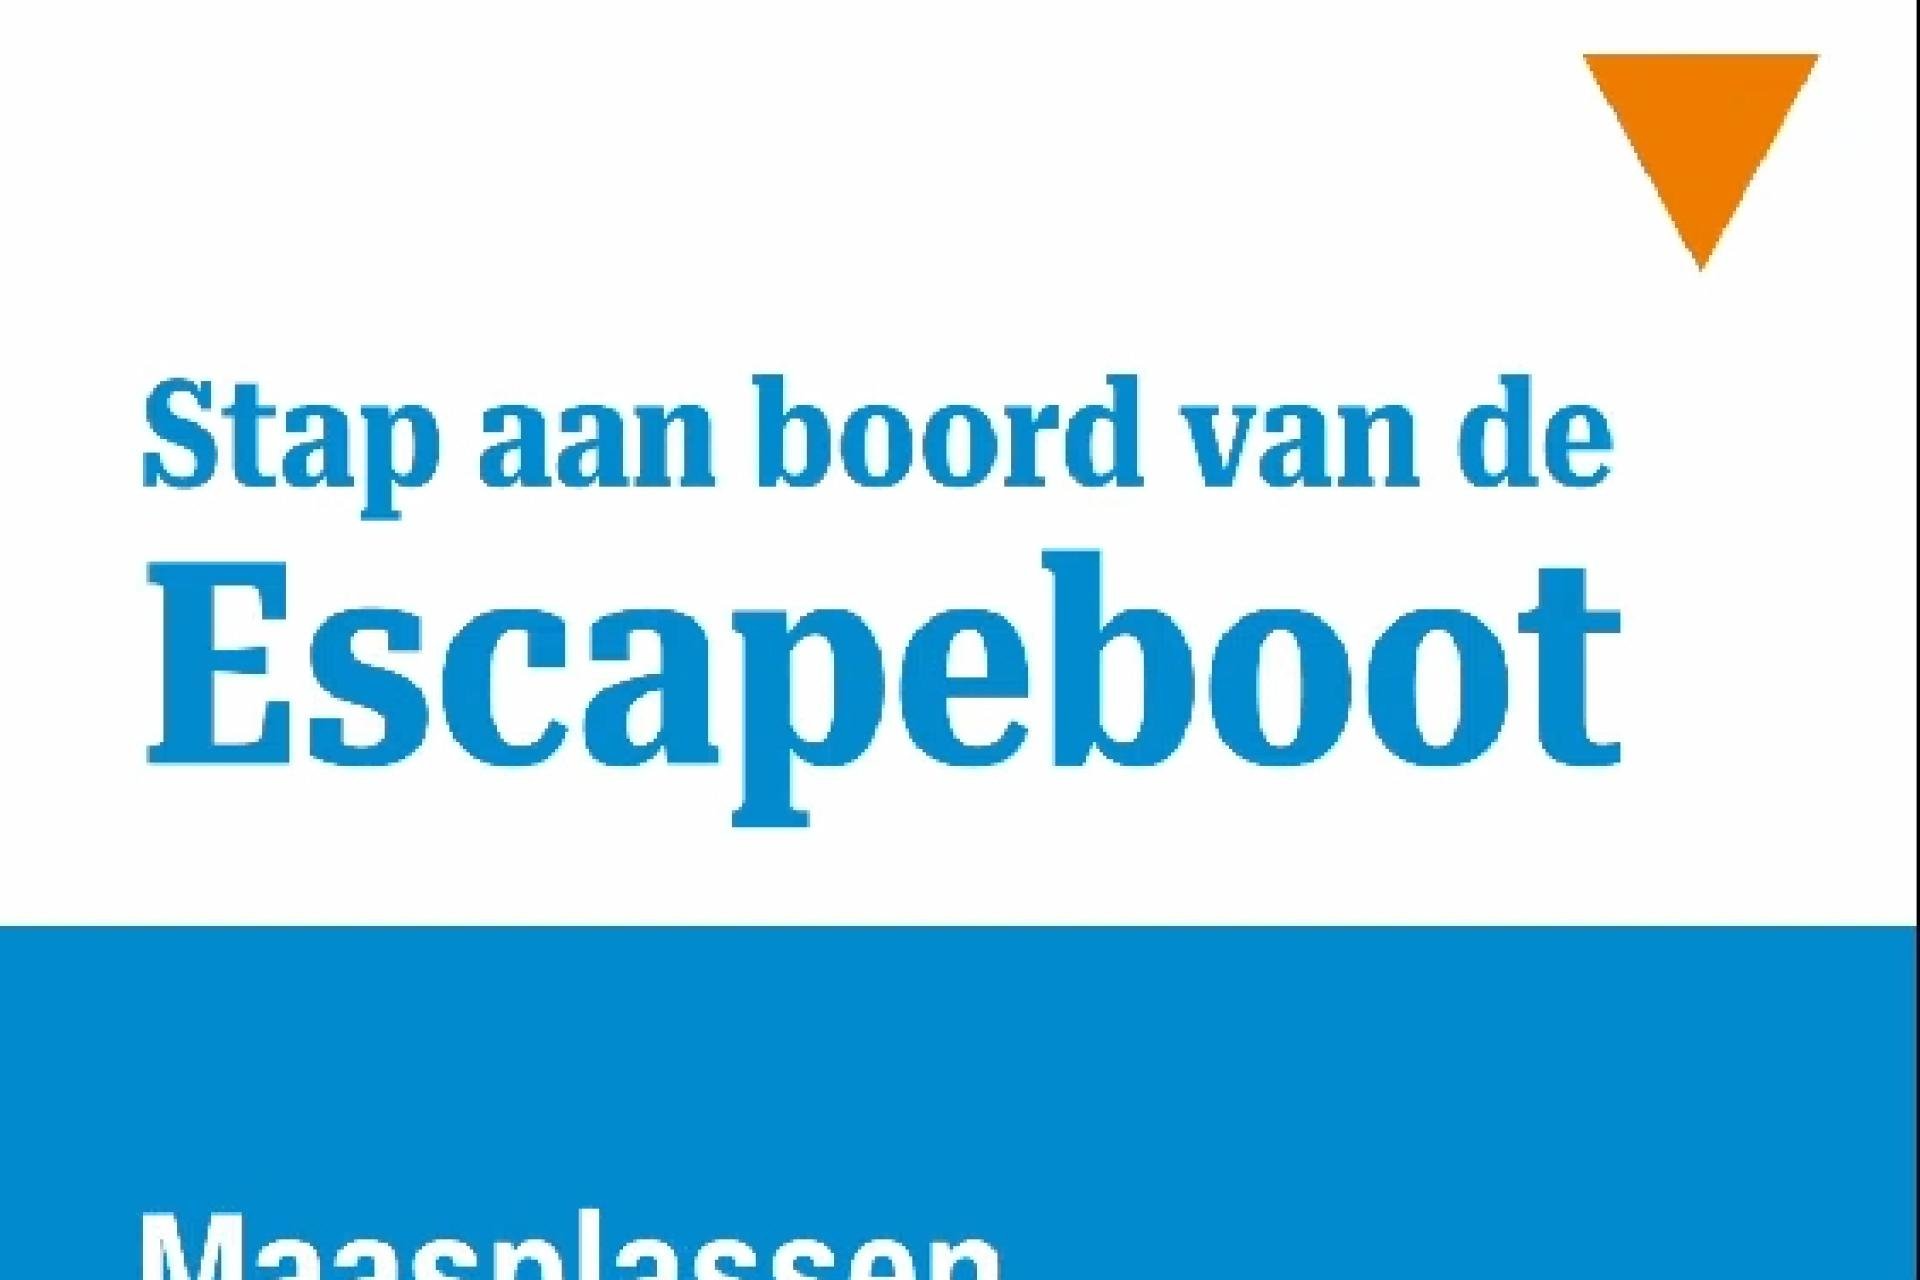 Escapeboot Maasplassen